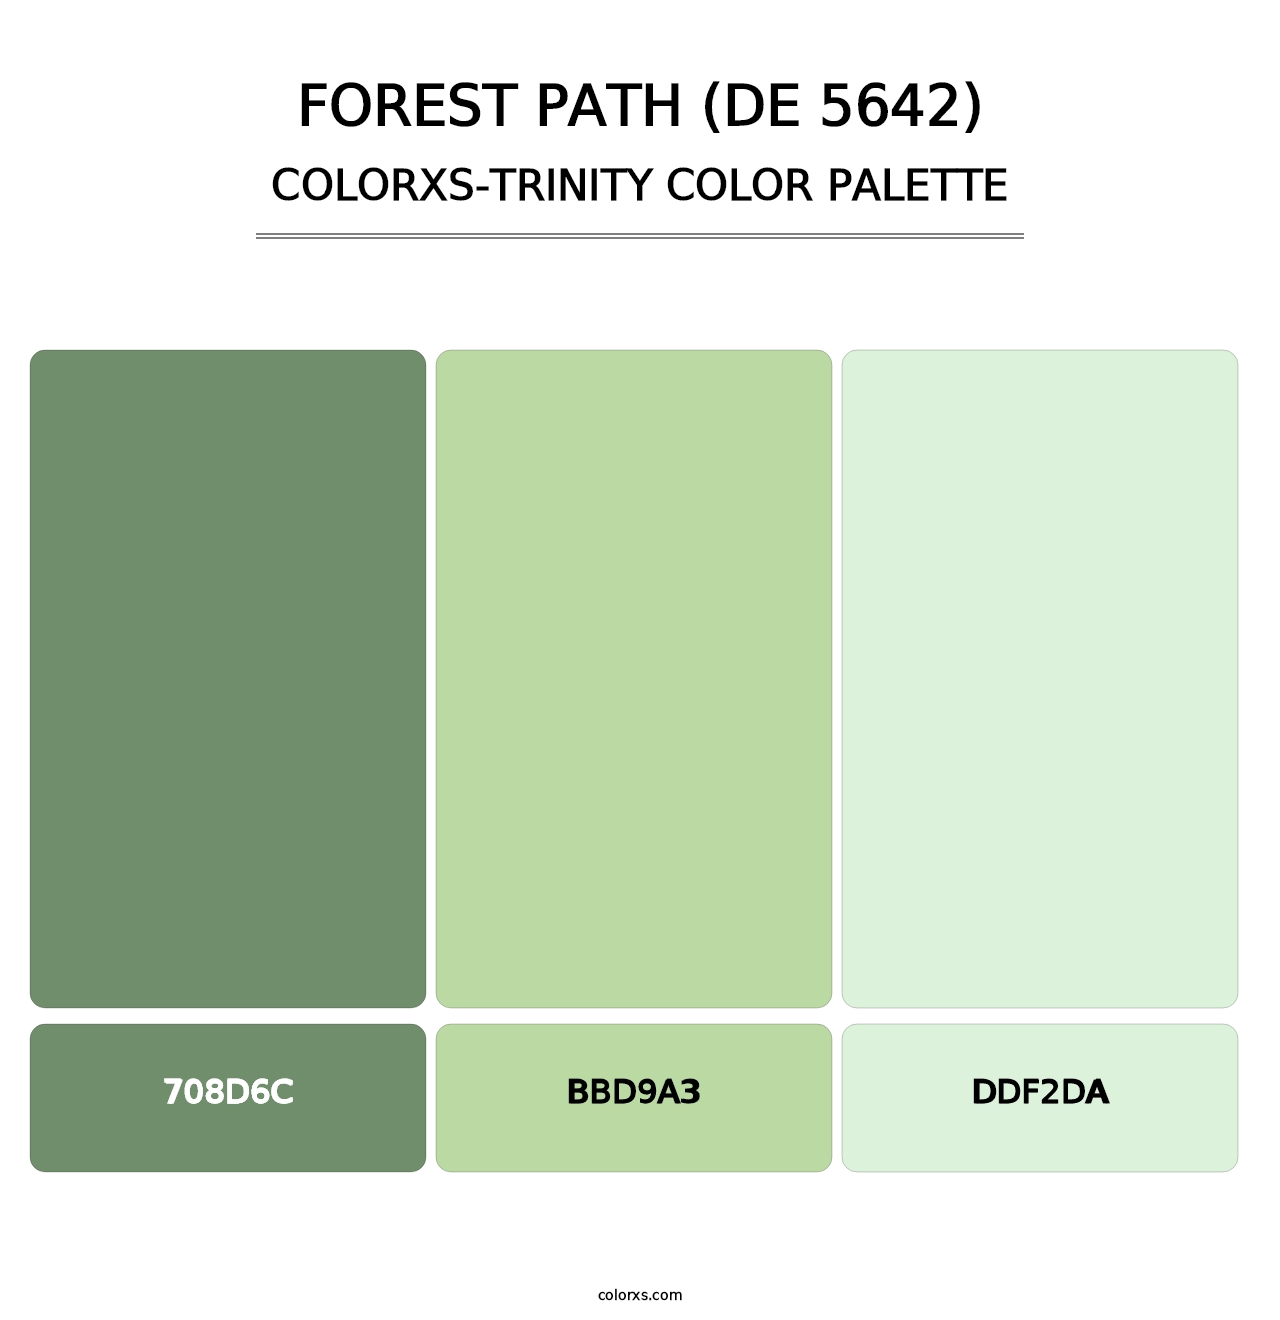 Forest Path (DE 5642) - Colorxs Trinity Palette